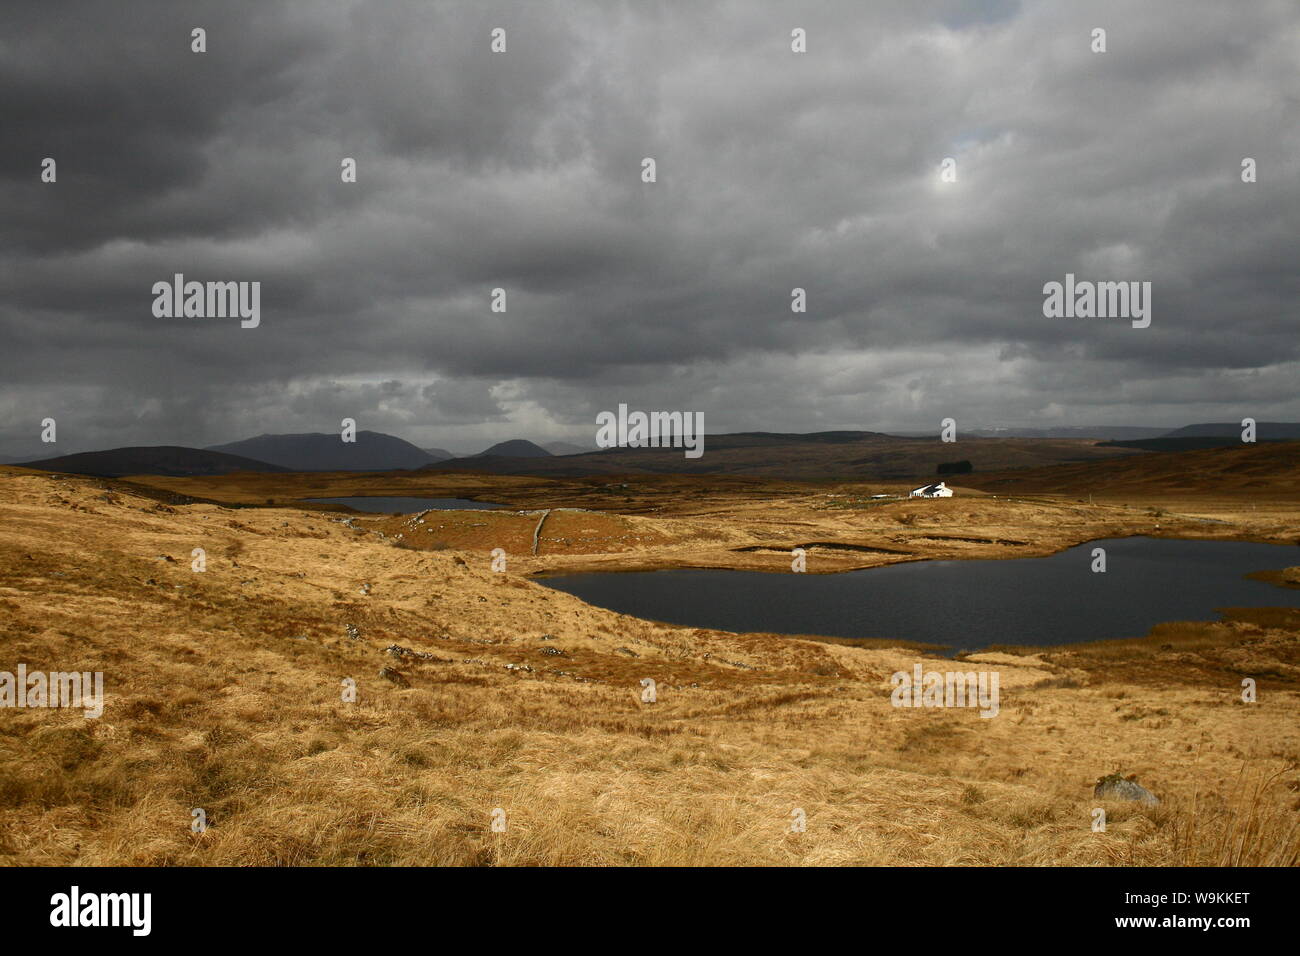 Moody Irish paesaggio immagine con lago e nuvole molto scure e minacciose sulle montagne di Connemara, Irlanda Foto Stock